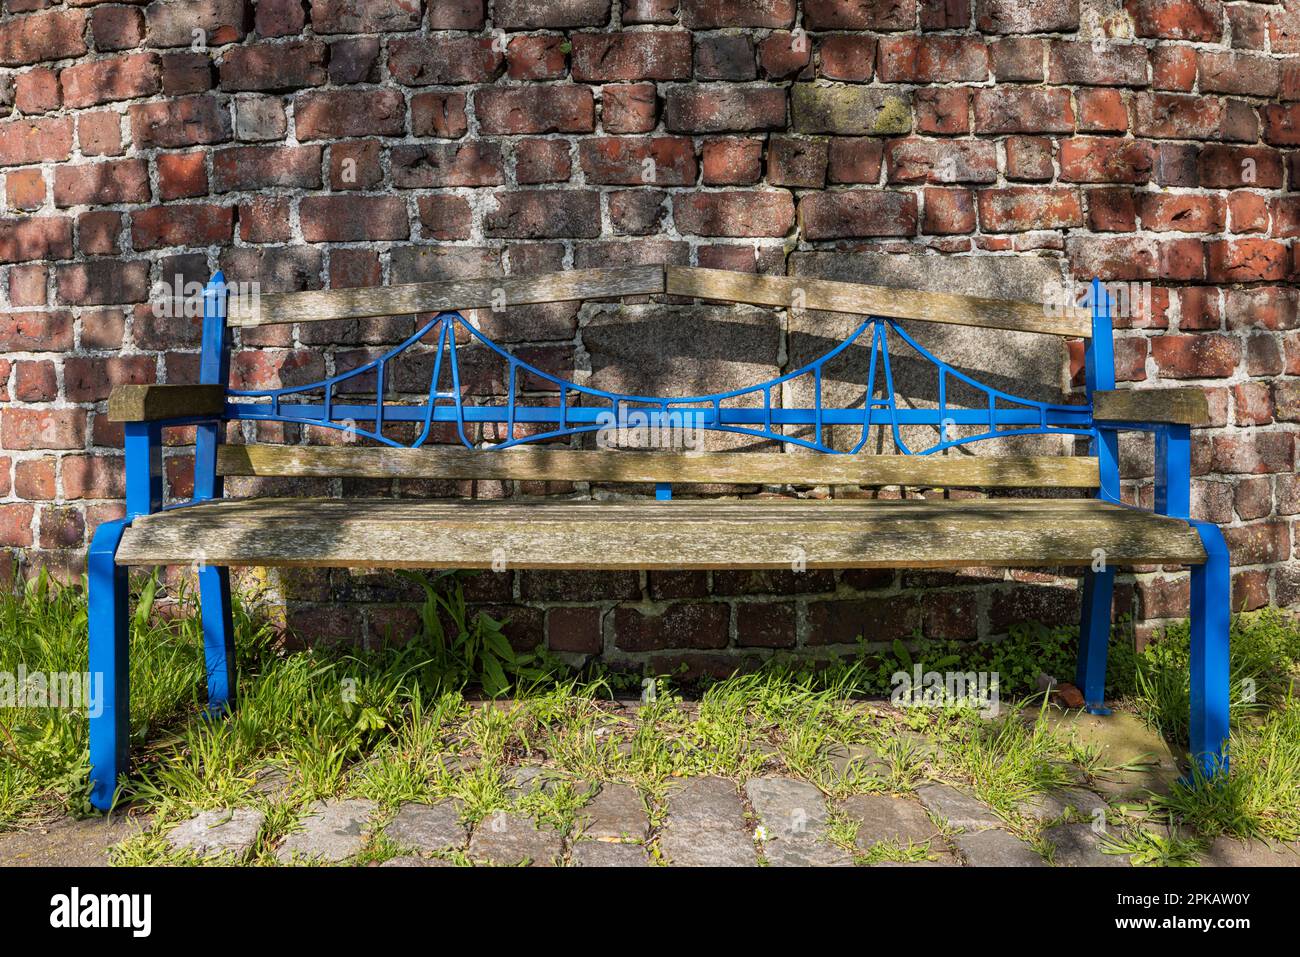 Bank an der plapperhaften Ruine auf der Jadeallee, vereinfachte Form der Kaiser-Wilhelm-Brücke als Rückenlehne, Grodendamm, Wilhelmshaven, Niedersachsen, Deutschland Stockfoto